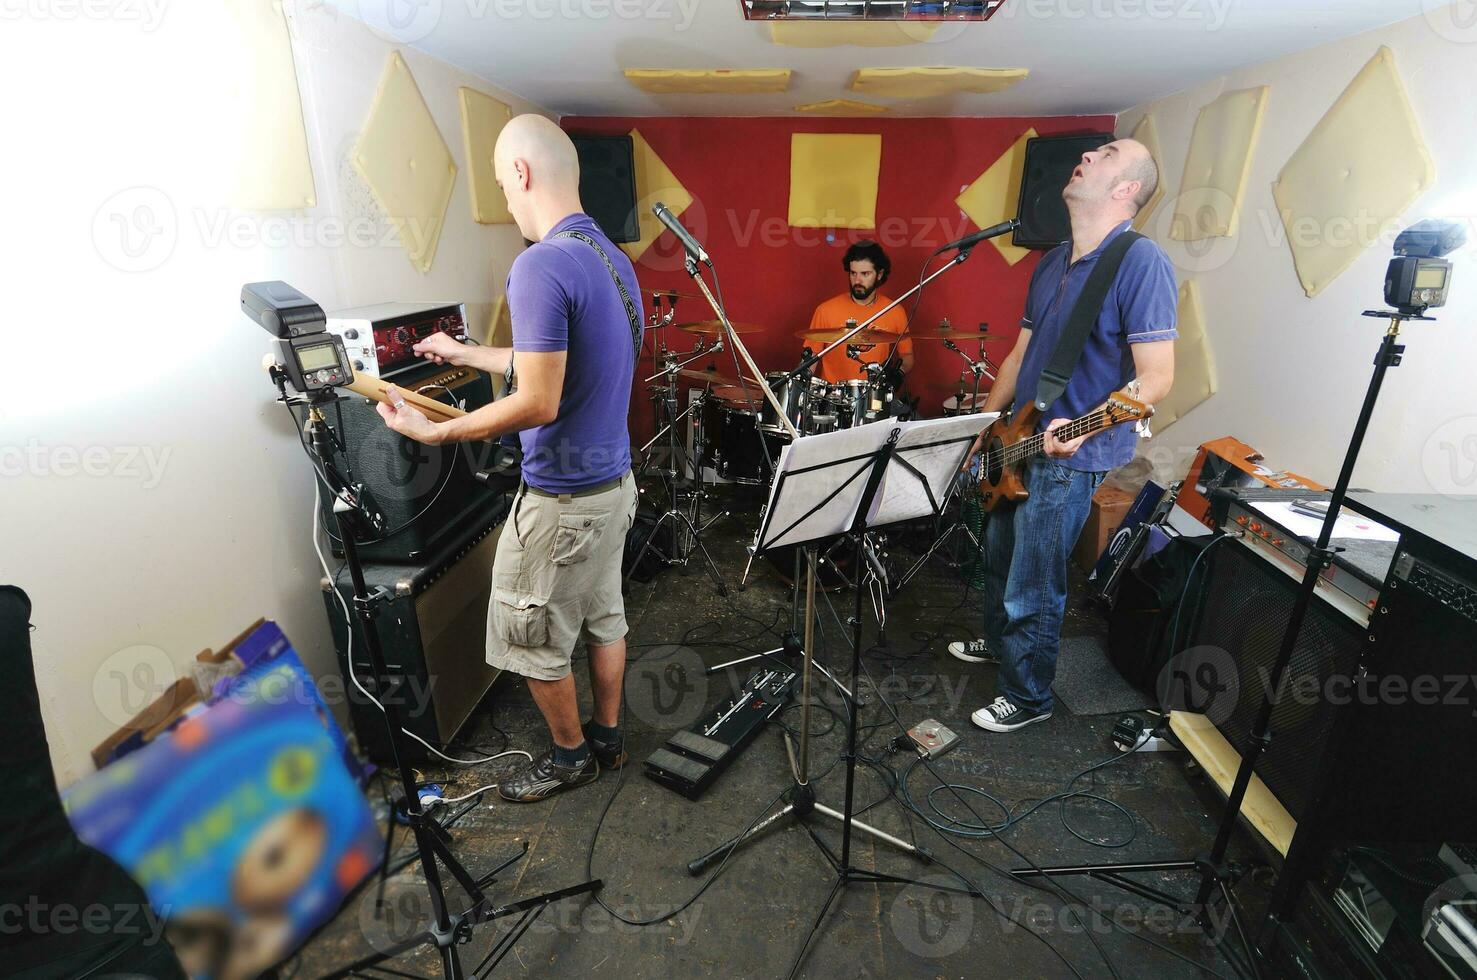 un groupe de musique s'entraîne dans un garage photo